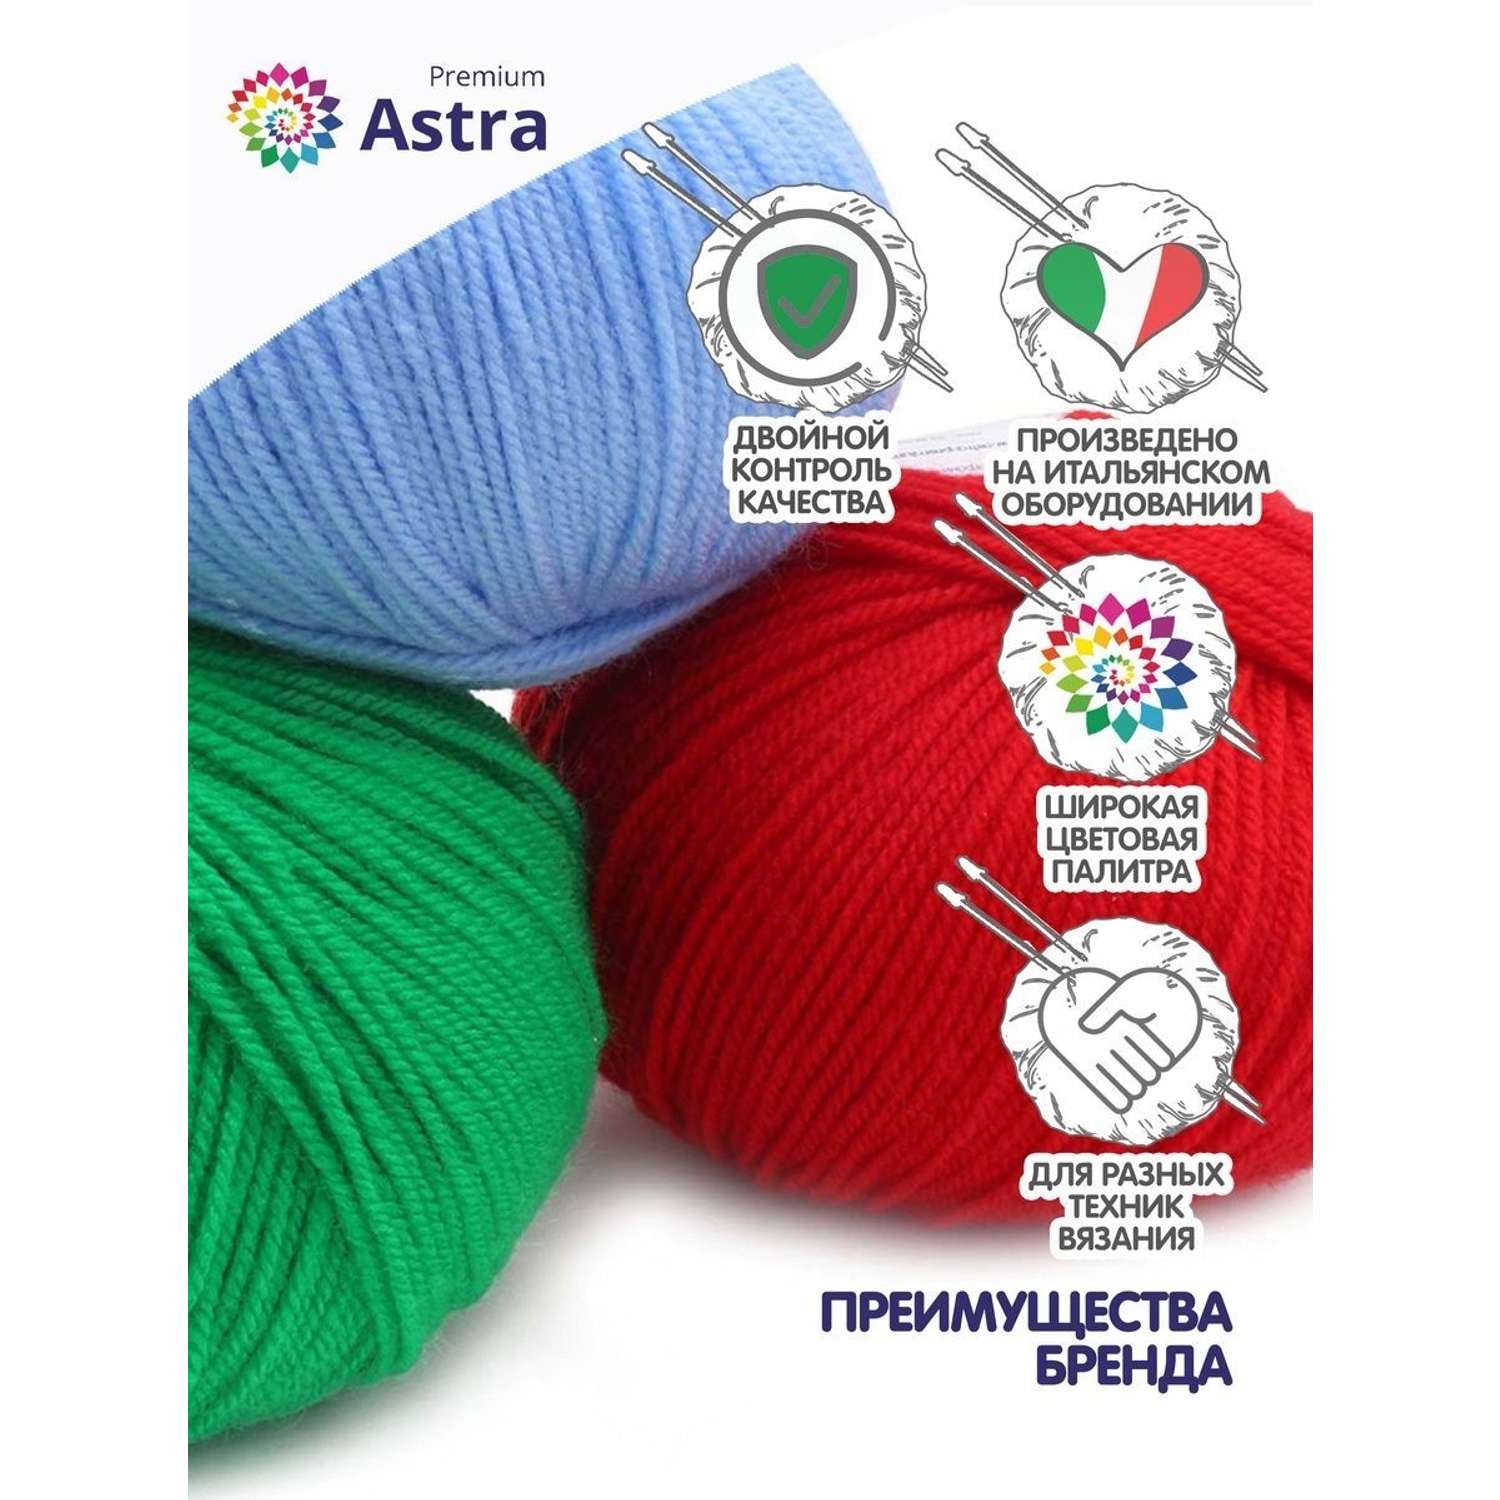 Пряжа для вязания Astra Premium амигуруми акрил для мягких игрушек 50 гр 175 м 104 желтый 6 мотков - фото 3